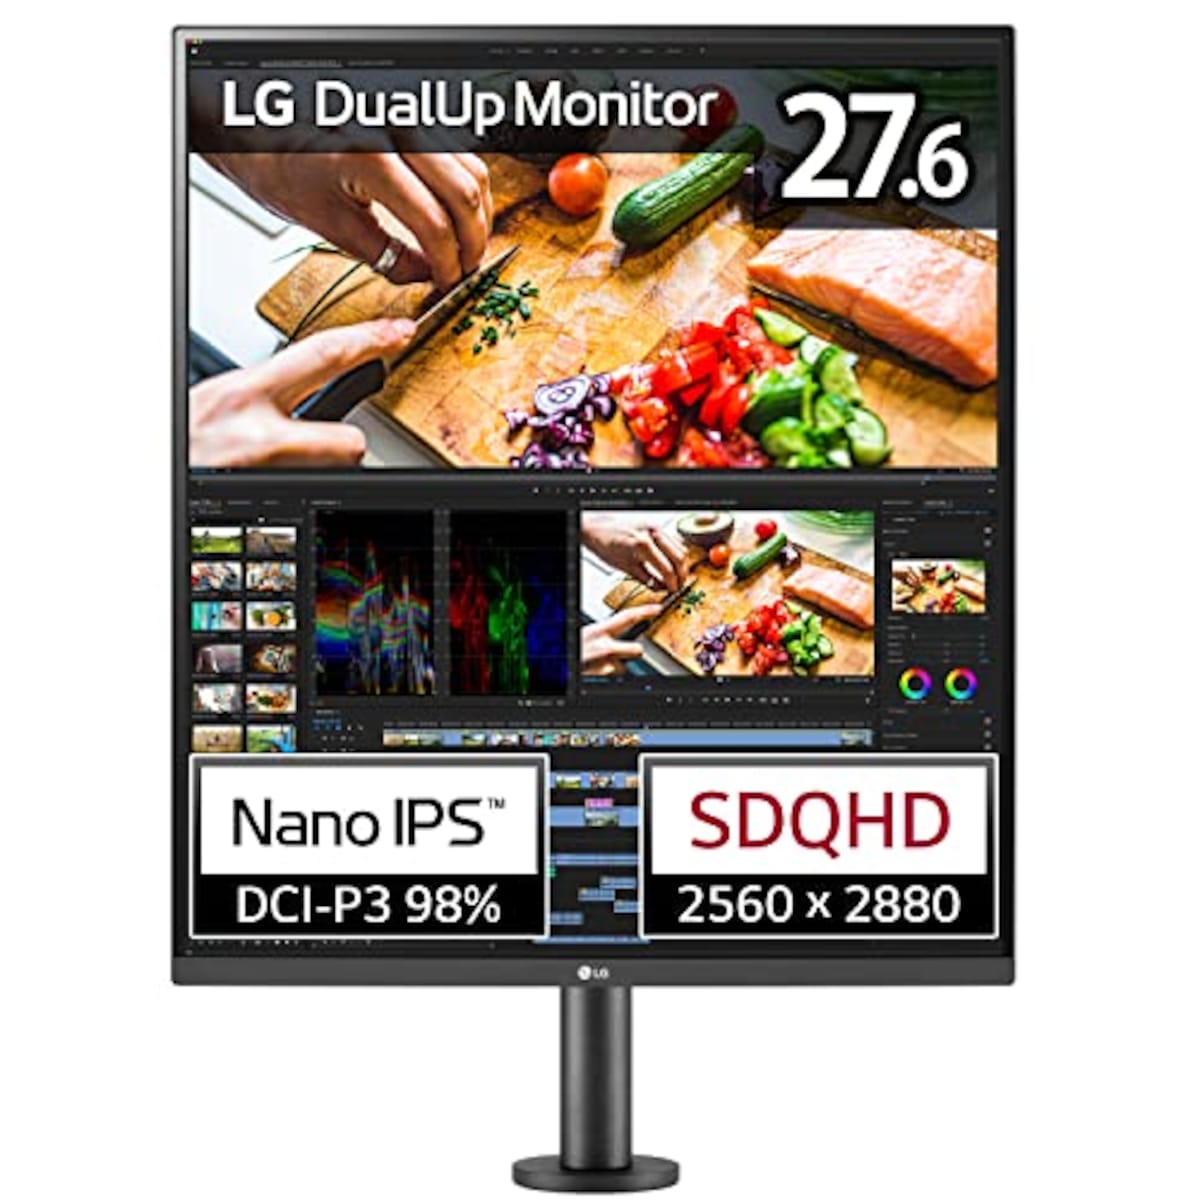 LG デュアルアップ モニター 28MQ780-B 27.6インチ/アスペクト比 16:18 SDQHD(2560×2880)/Nano IPS 非光沢/DCI-P3 98%/USB Type-C、HDMI×2、DisplayPort/スピーカー搭載/高さ調節、スイベル、ピボット